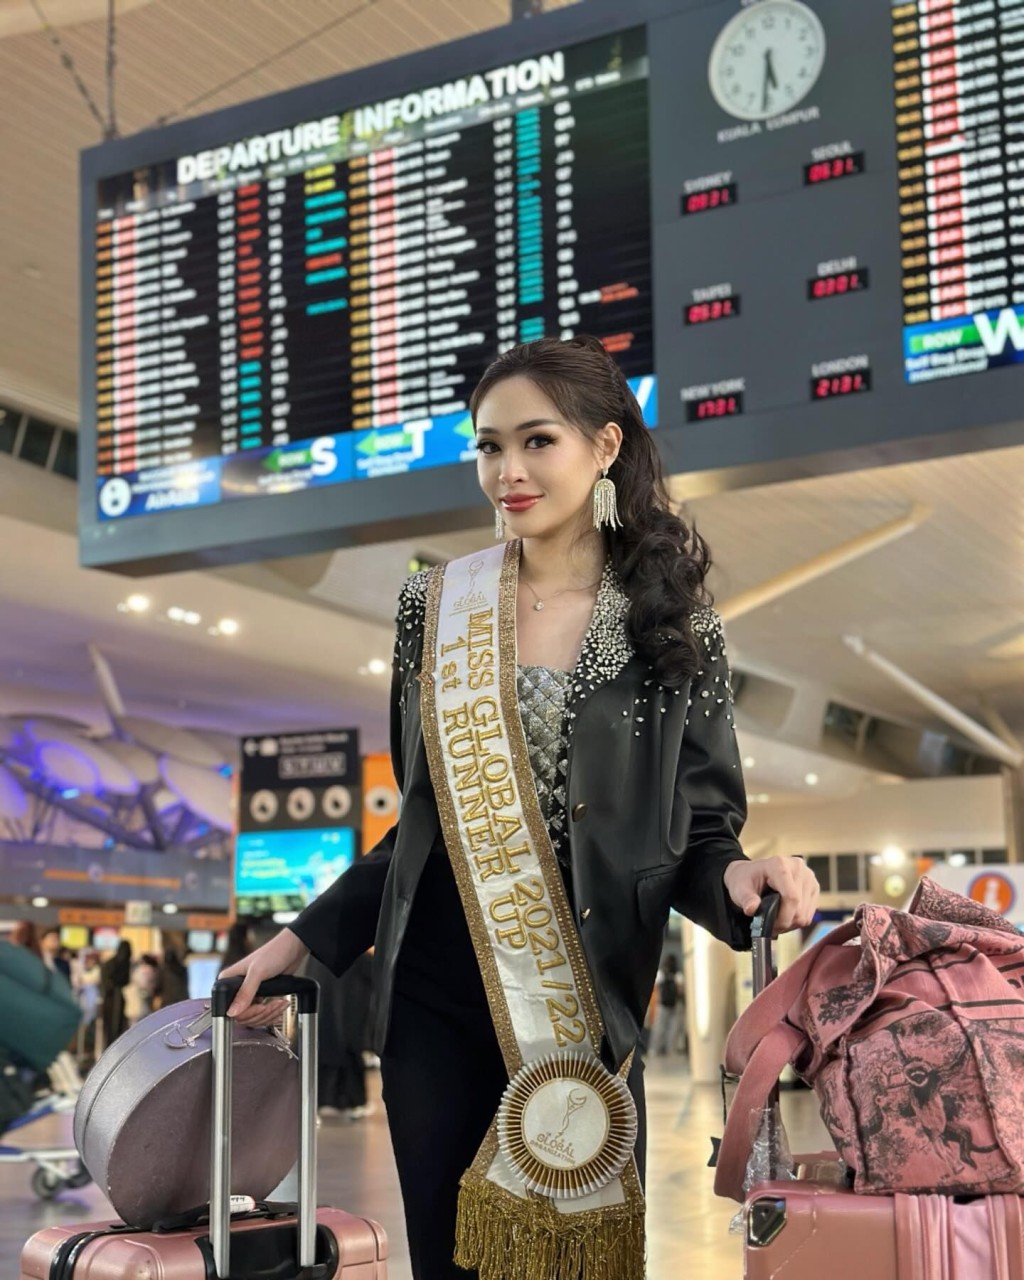 林雪卉是Miss Global 2021/2022（世界环球国际小姐）第二名。